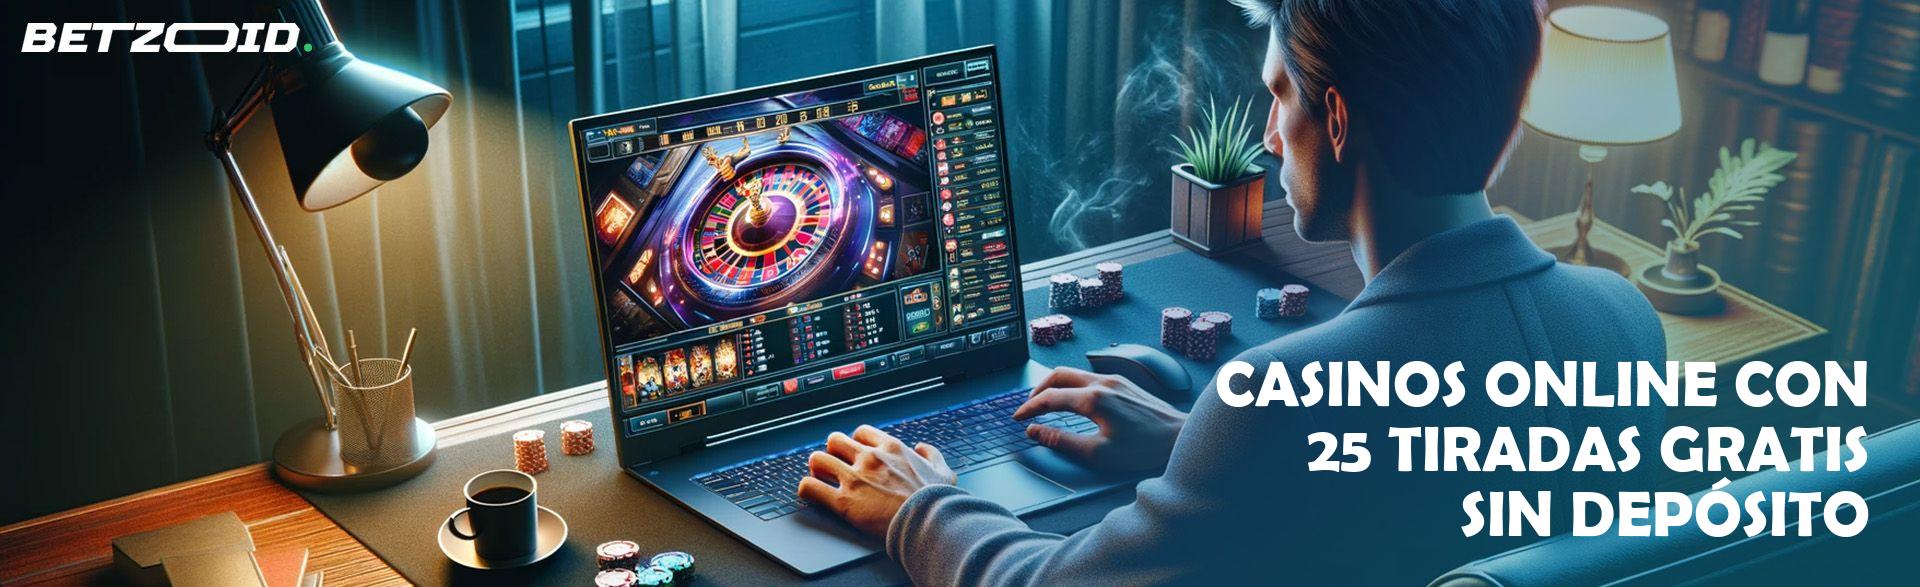 Casinos Online con 25 Tiradas Gratis sin Depósito.